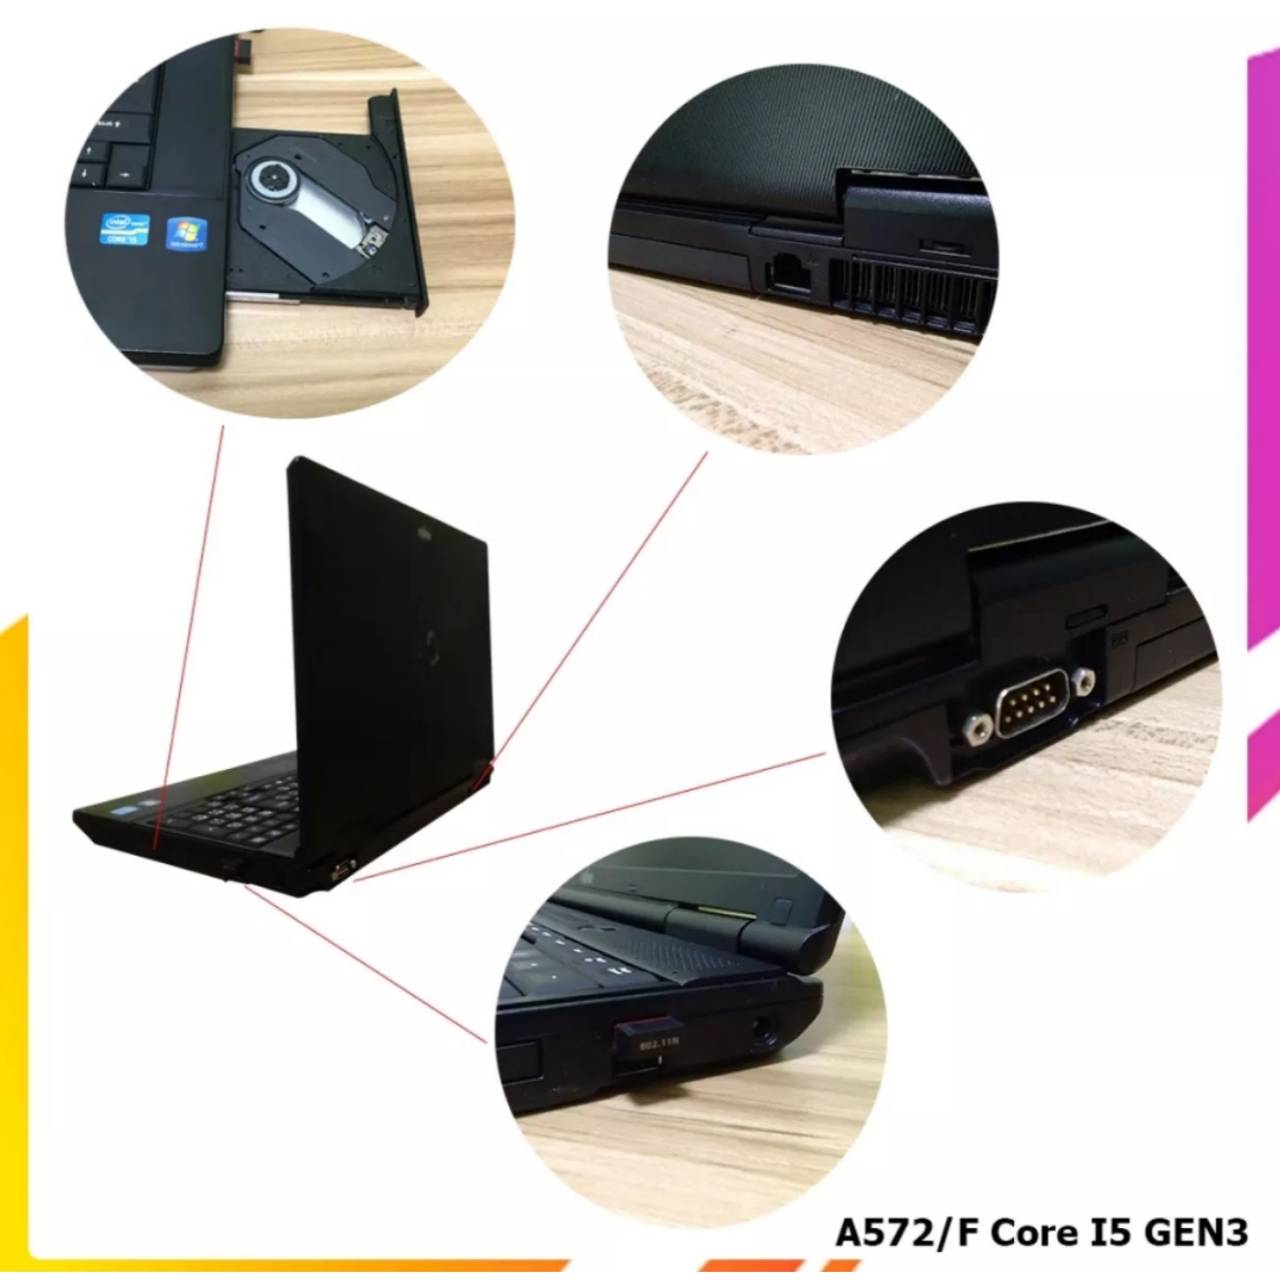 โน๊ตบุ๊ค Fujitsu A572 Core i5-3320M เล่นเกมส์ออนไลน์ได้ เล่นเน็ต 